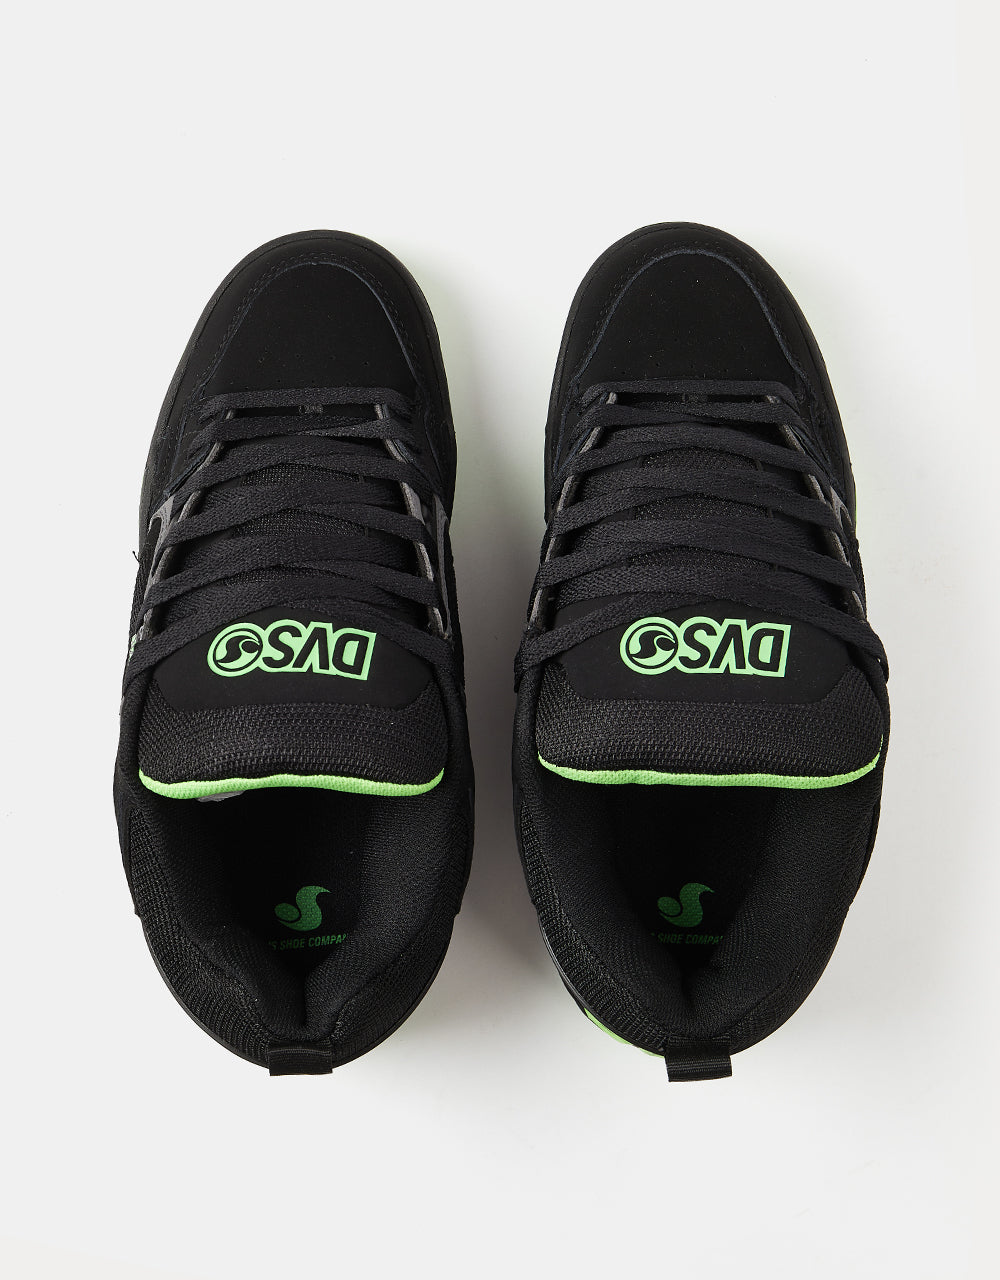 DVS Comanche Skate Shoes - Black/Charcoal/Lime Nubuck